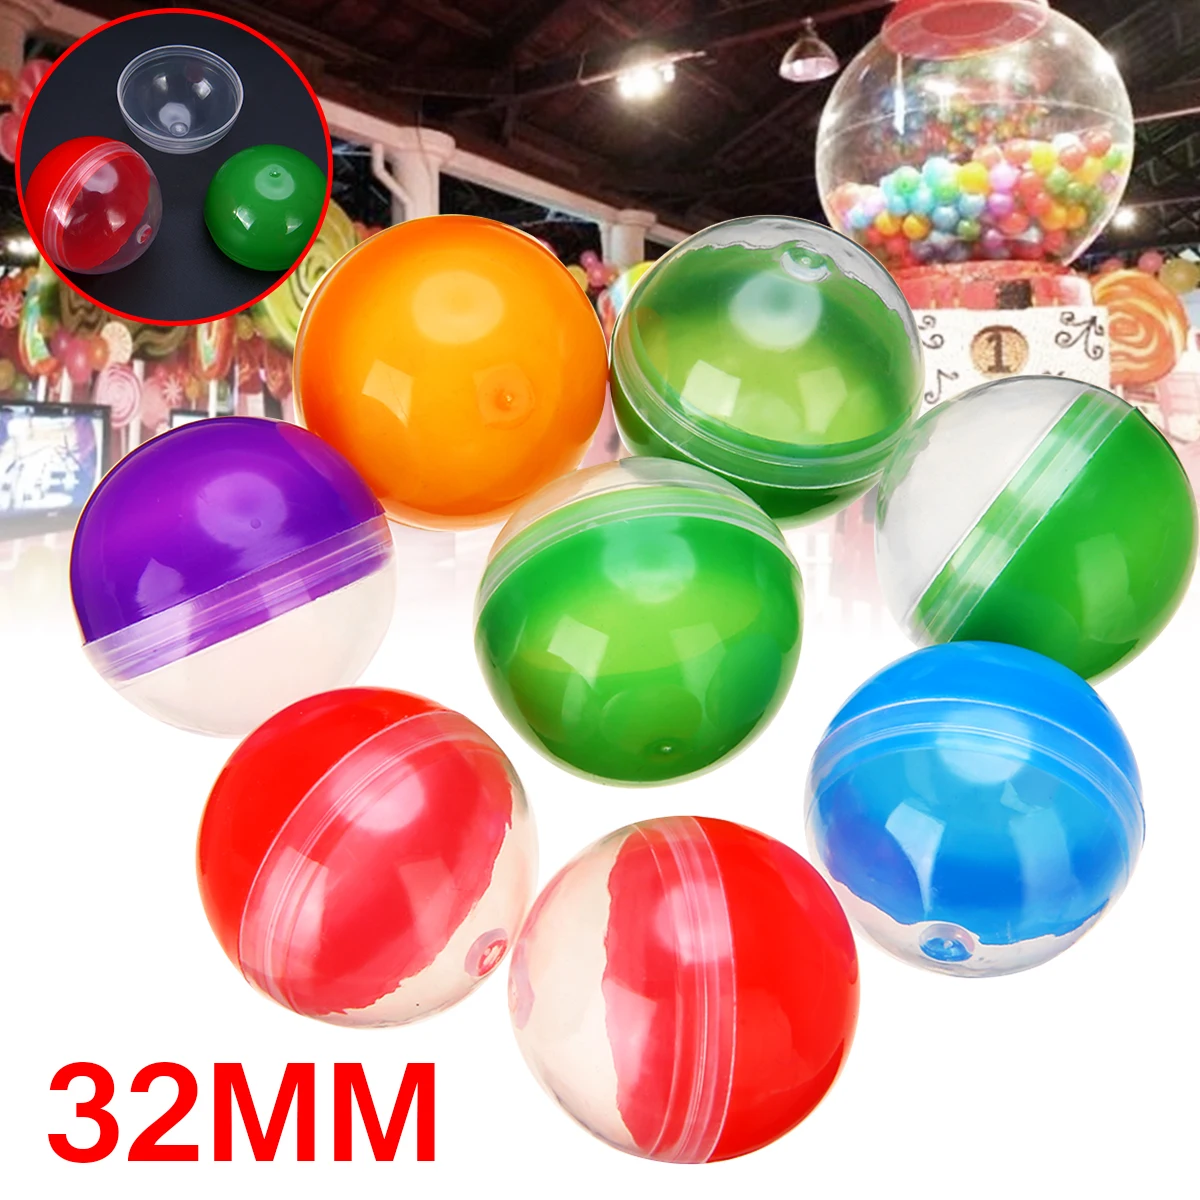 OLOEY 50 шт. разноцветные торговые игрушечные капсулы торговый автомат Пустой Круглый игрушечные капсулы 1,2 дюйма 32 мм диаметр для события вечерние подарки